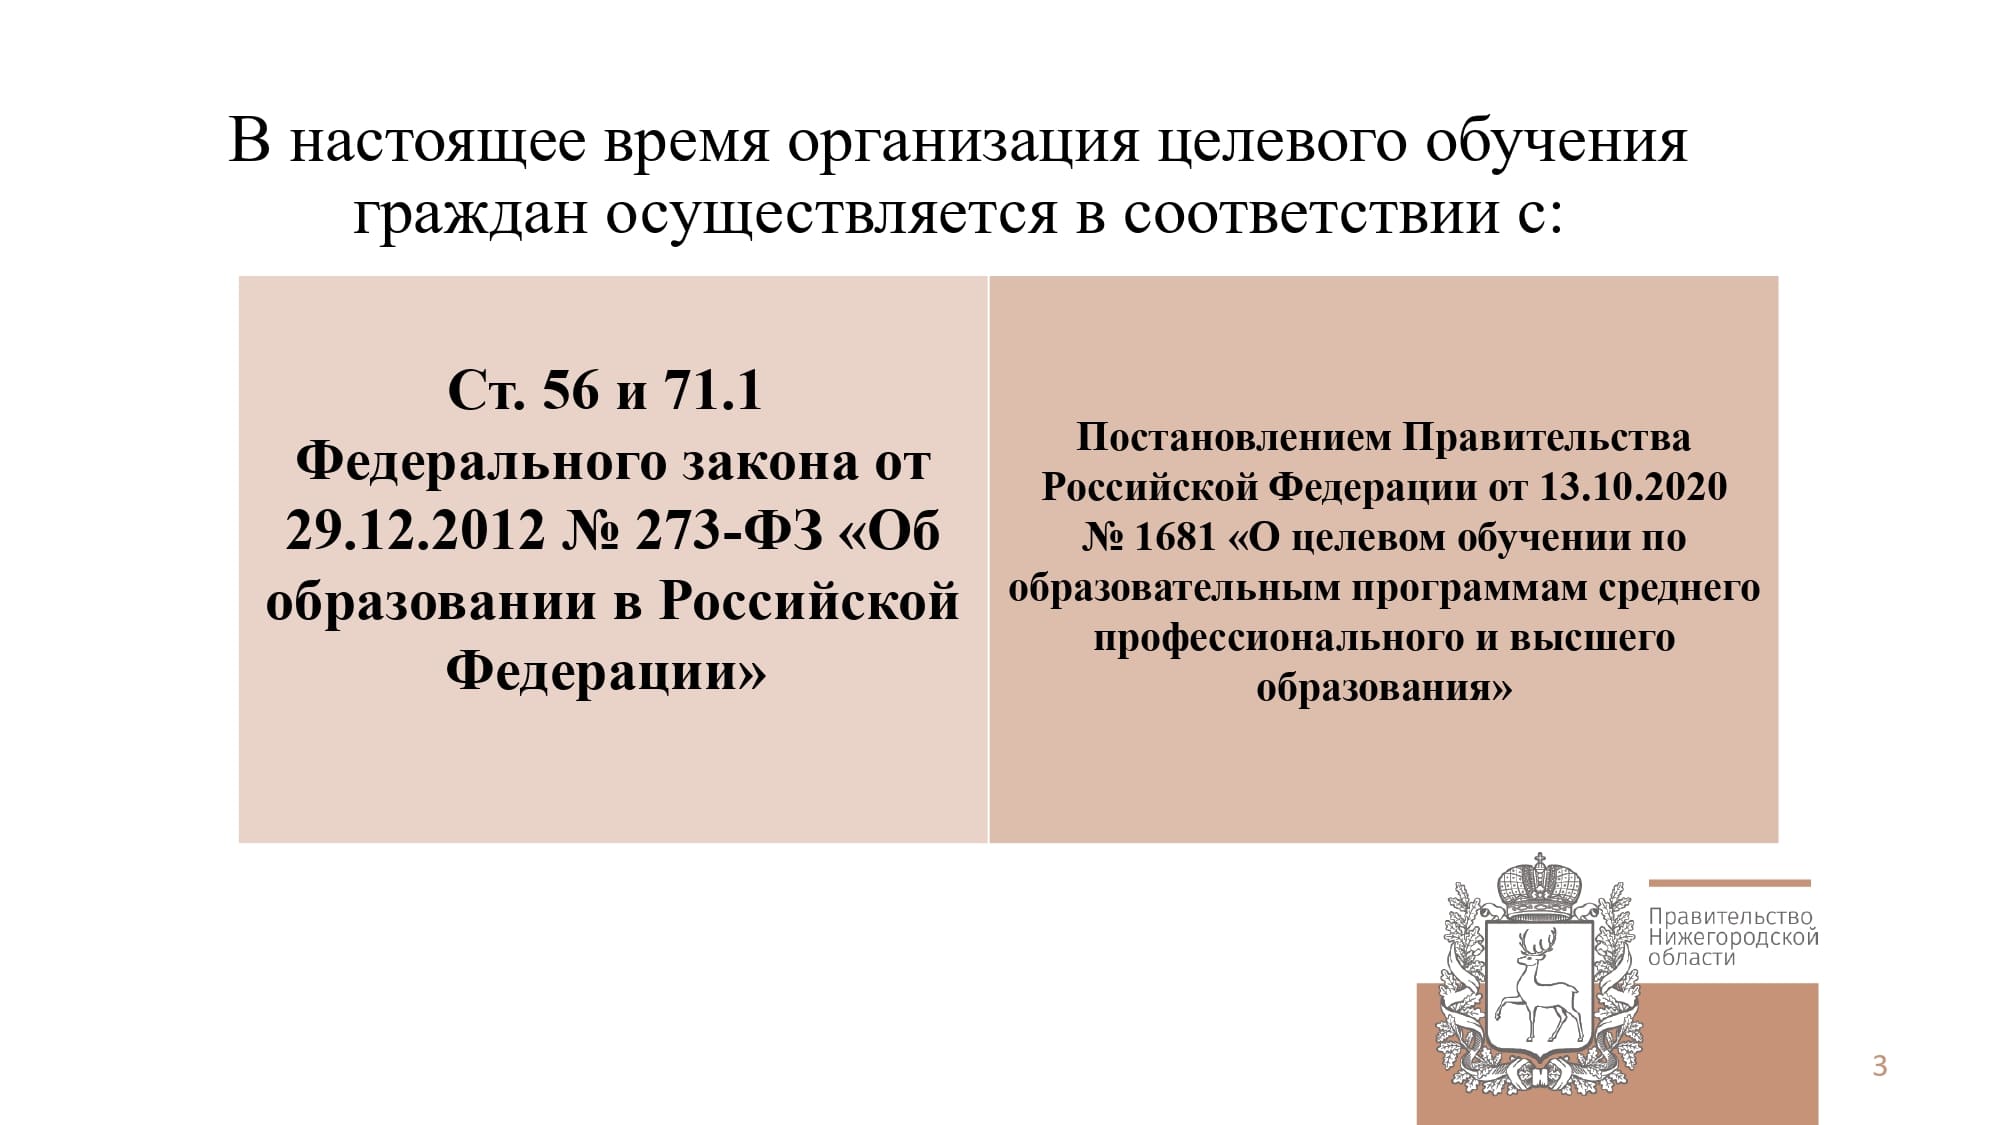 В настоящее время организация целевого обучения граждан осуществляется в соответствии с ст. 56 и 71.1 ФЗ от 29.12.2012 №273-ФЗ "Об образовании в РФ"